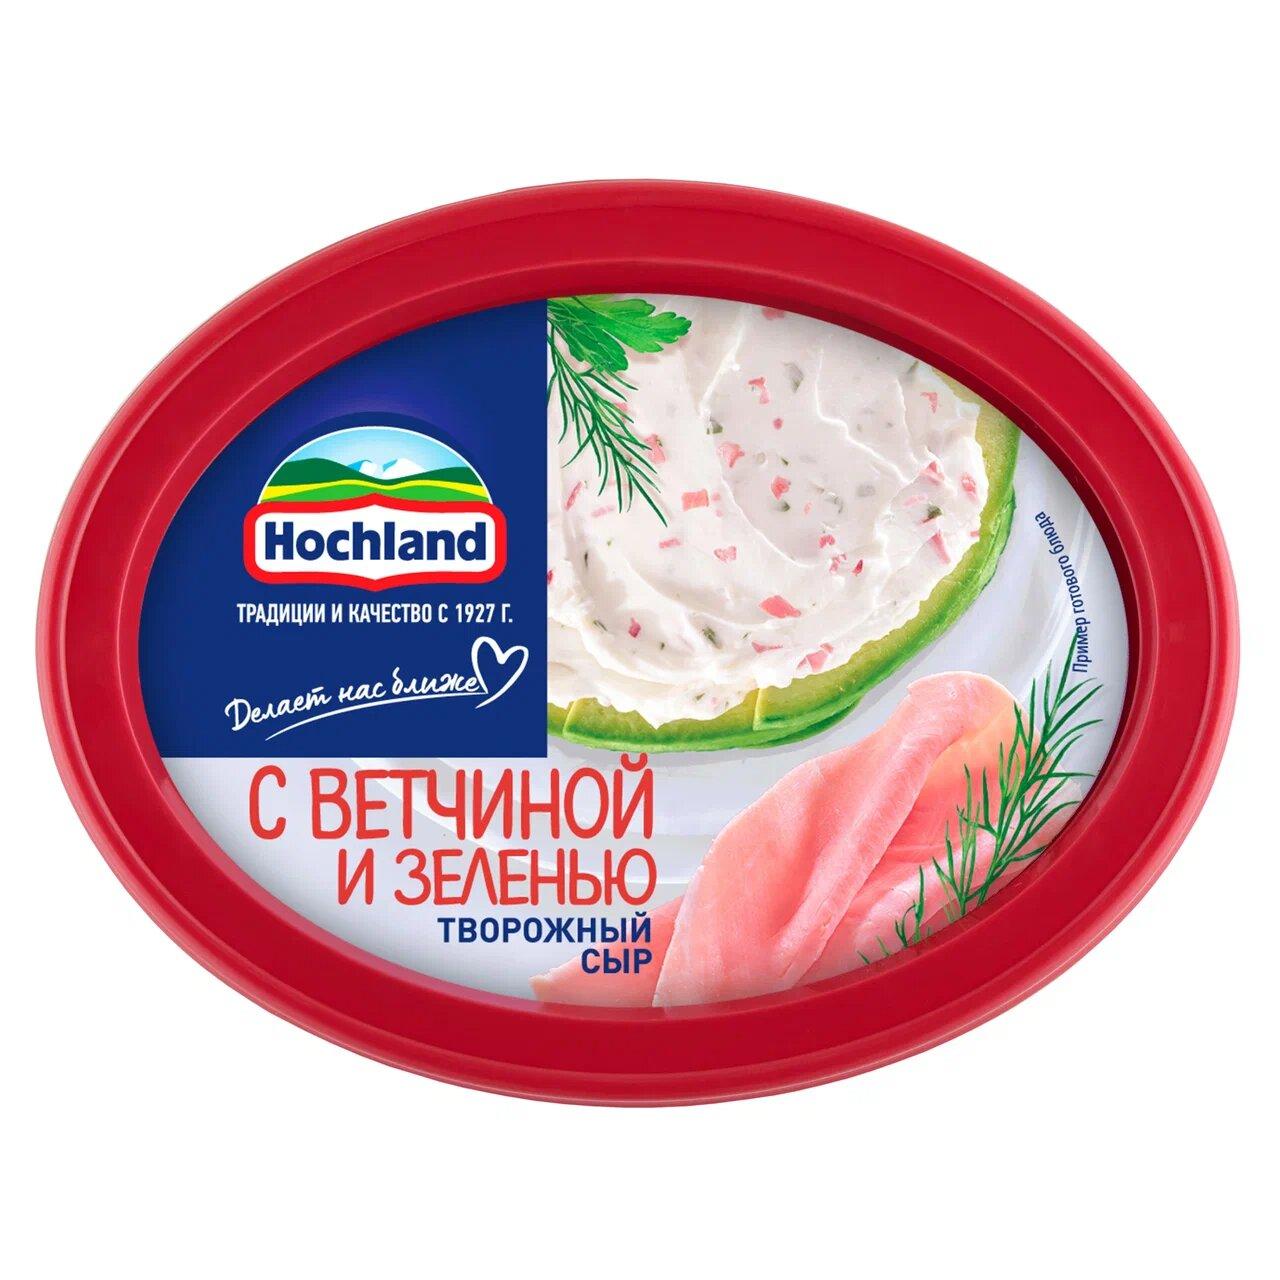 Сыр творожный Hochland с ветчиной и зеленью, 140 гр., ПЭТ